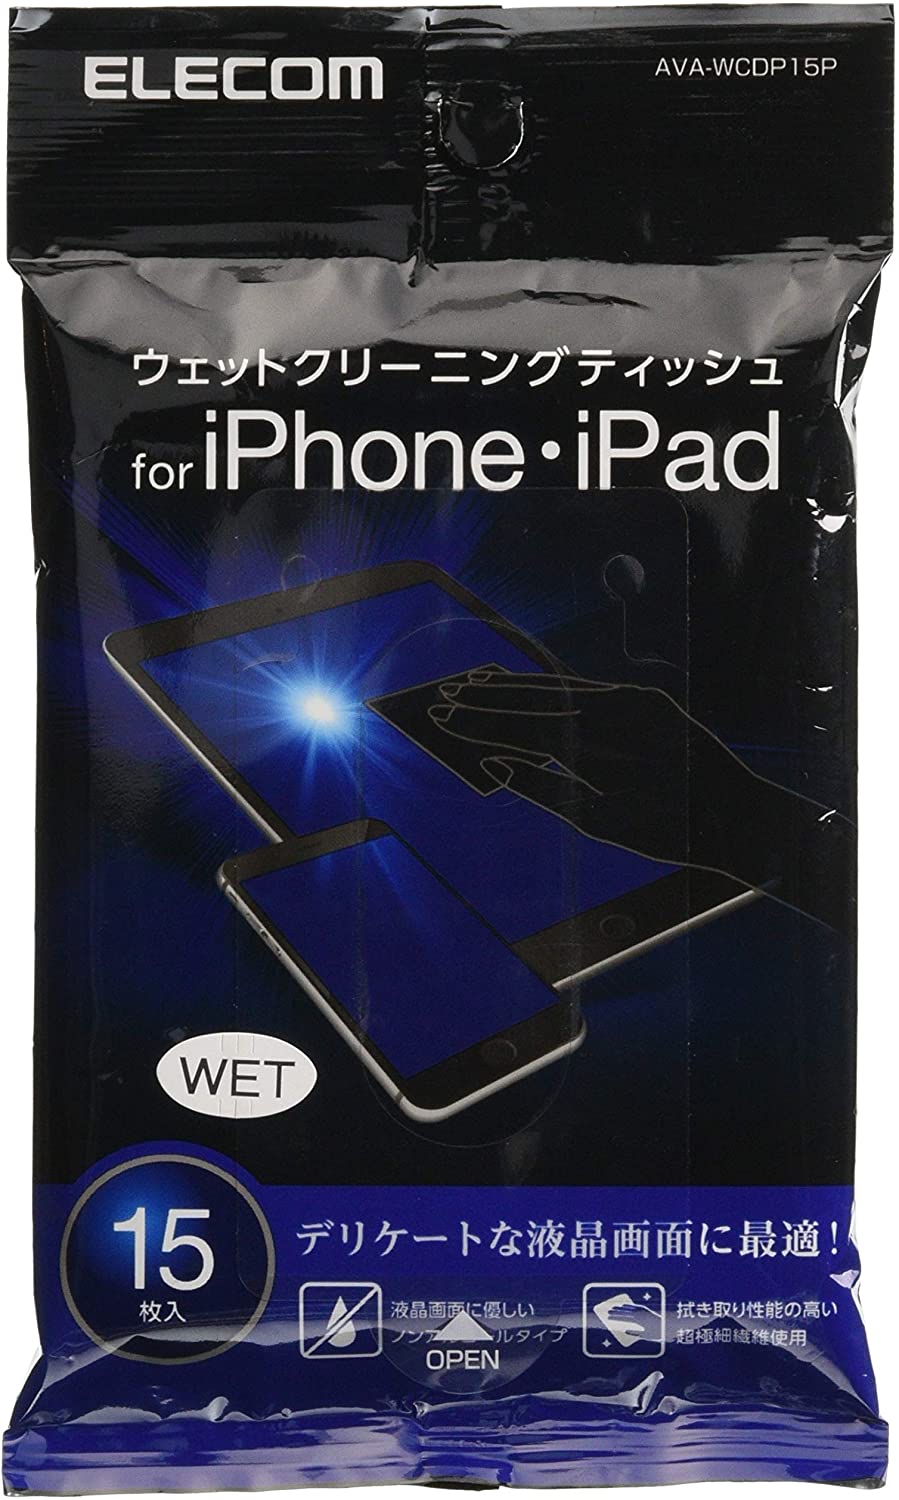 エレコム iPad クリーナー ウェットティッシュ 画面を傷つけない 拭き跡が残らない (AVA-WCDP15P) メーカー在庫品